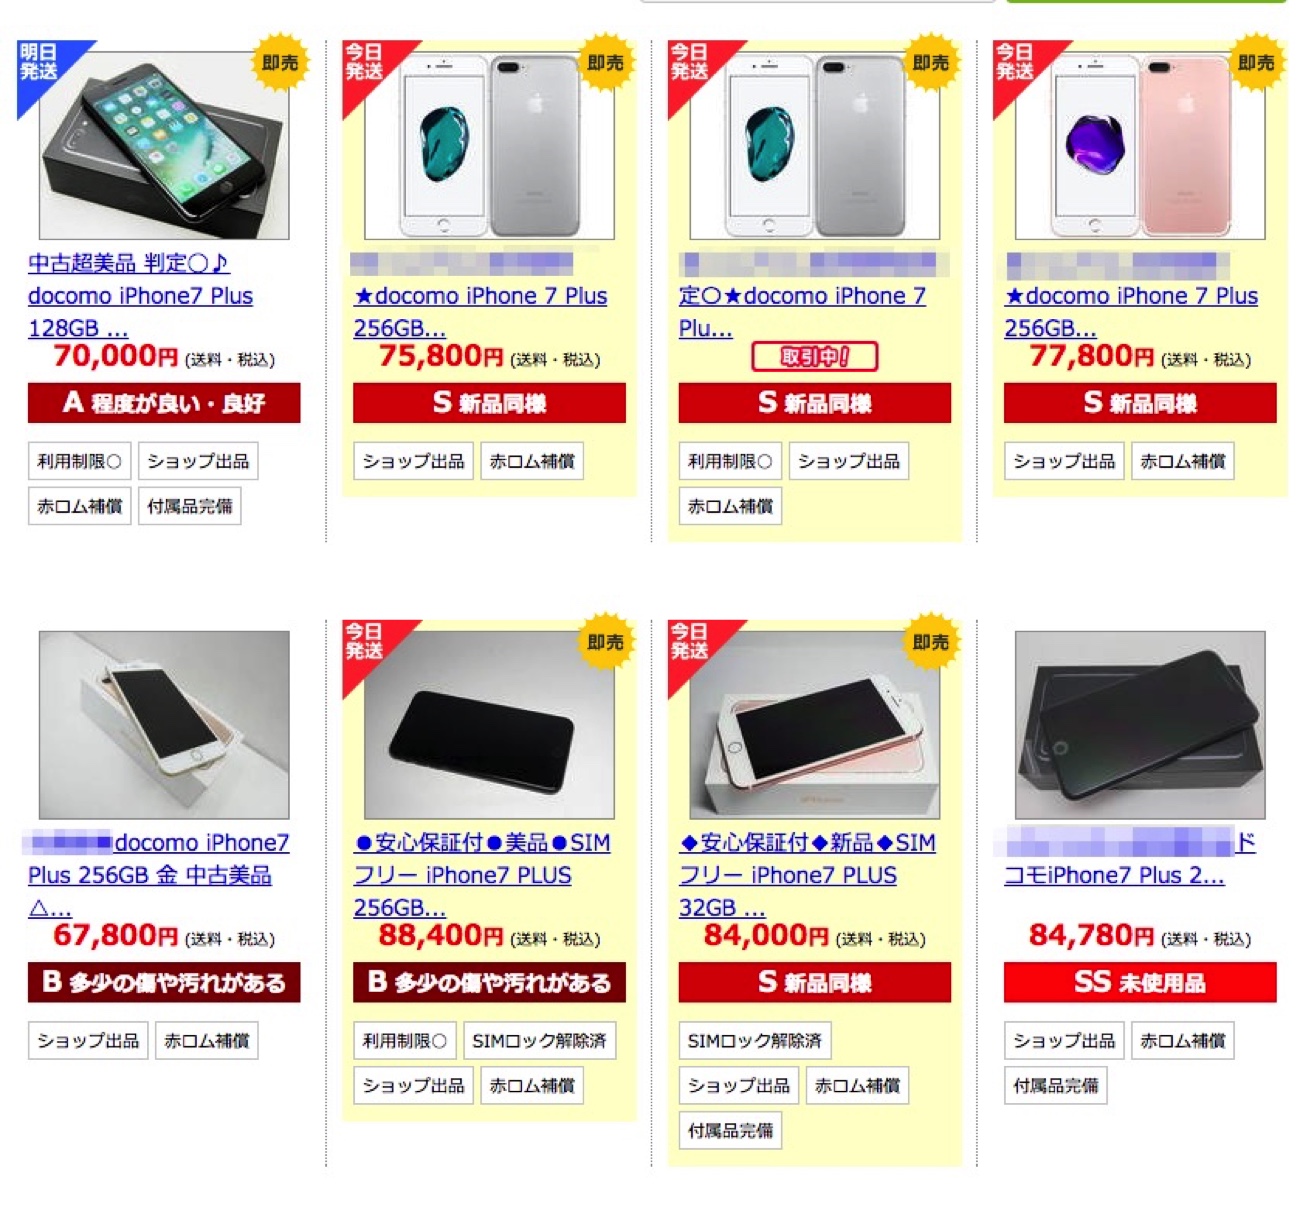 Iphone X 8登場 中古iphone 7はおいくら 今後の値動き予想も合わせてどうぞ Engadget 日本版